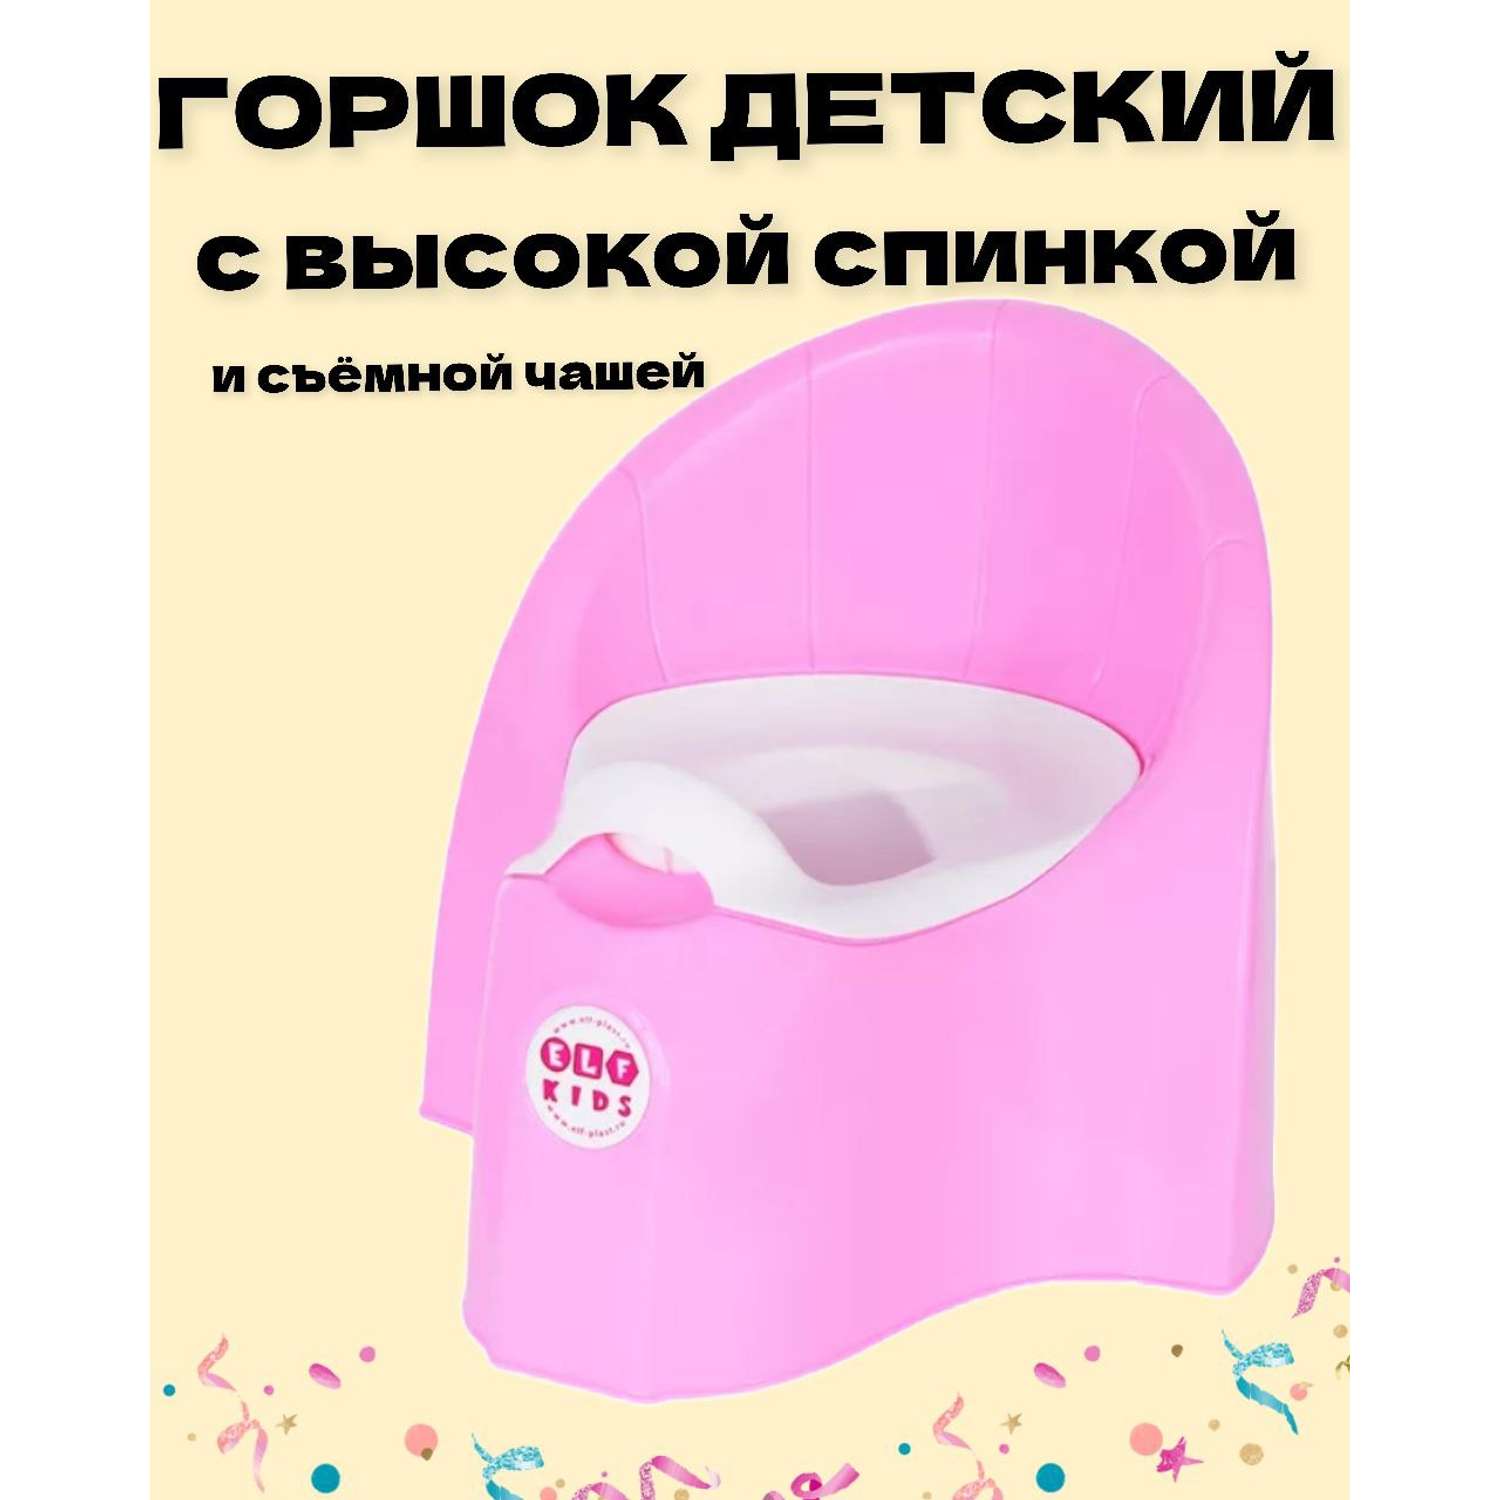 Горшок детский пластиковый elfplast со съемной емкостью цвет-розовый. - фото 1